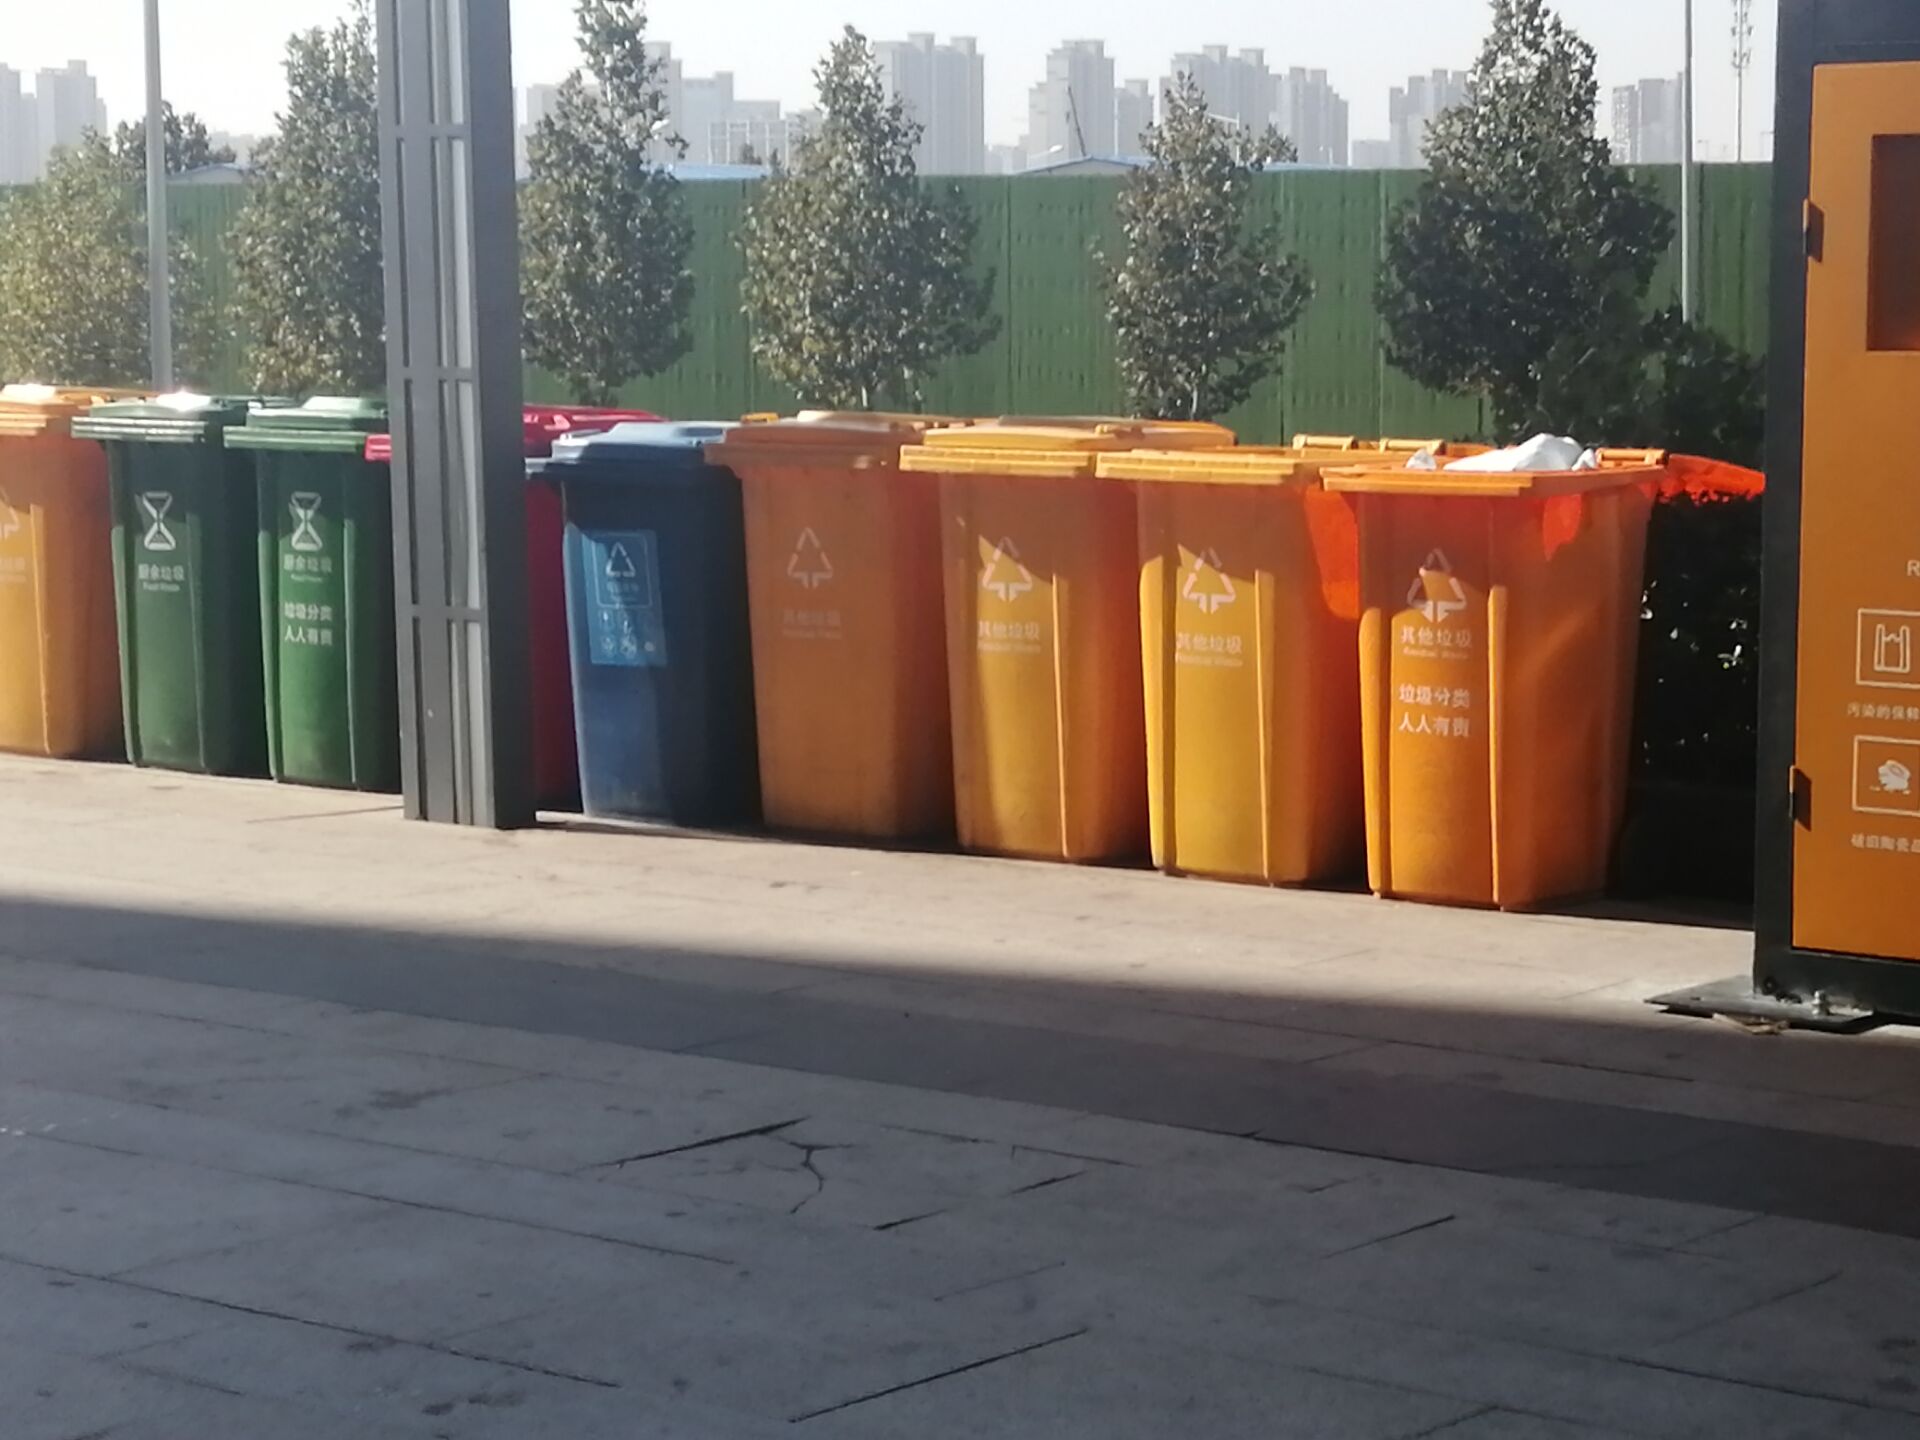 南京鼓楼区举办暑期研学活动 着力提高青少年生活垃圾分类和资源环境保护意识